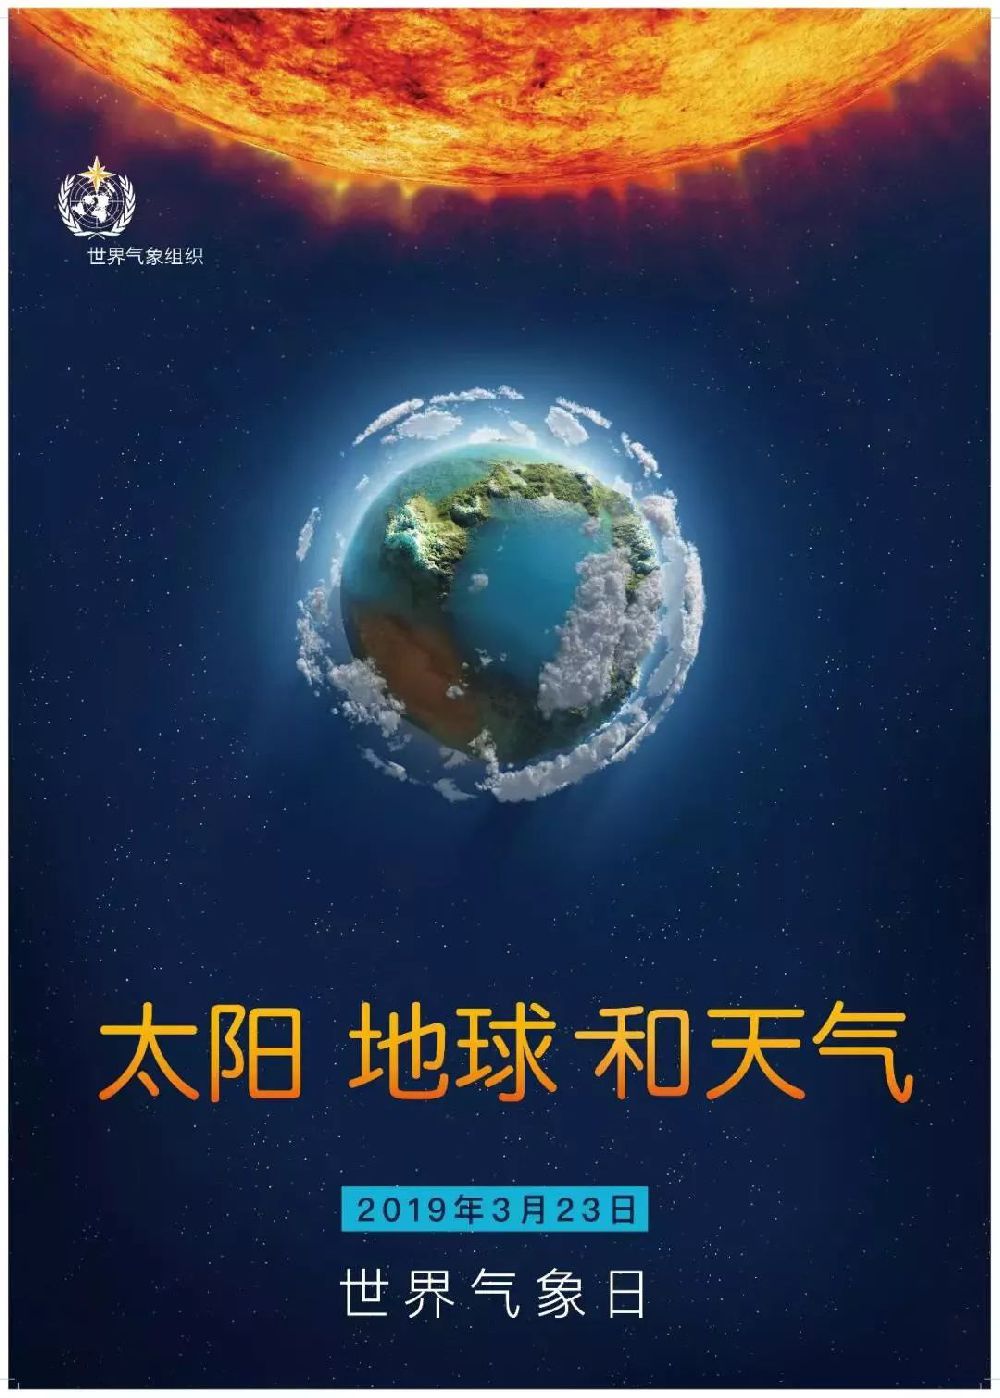 2019年3月23日世界气象日北京开放活动公告